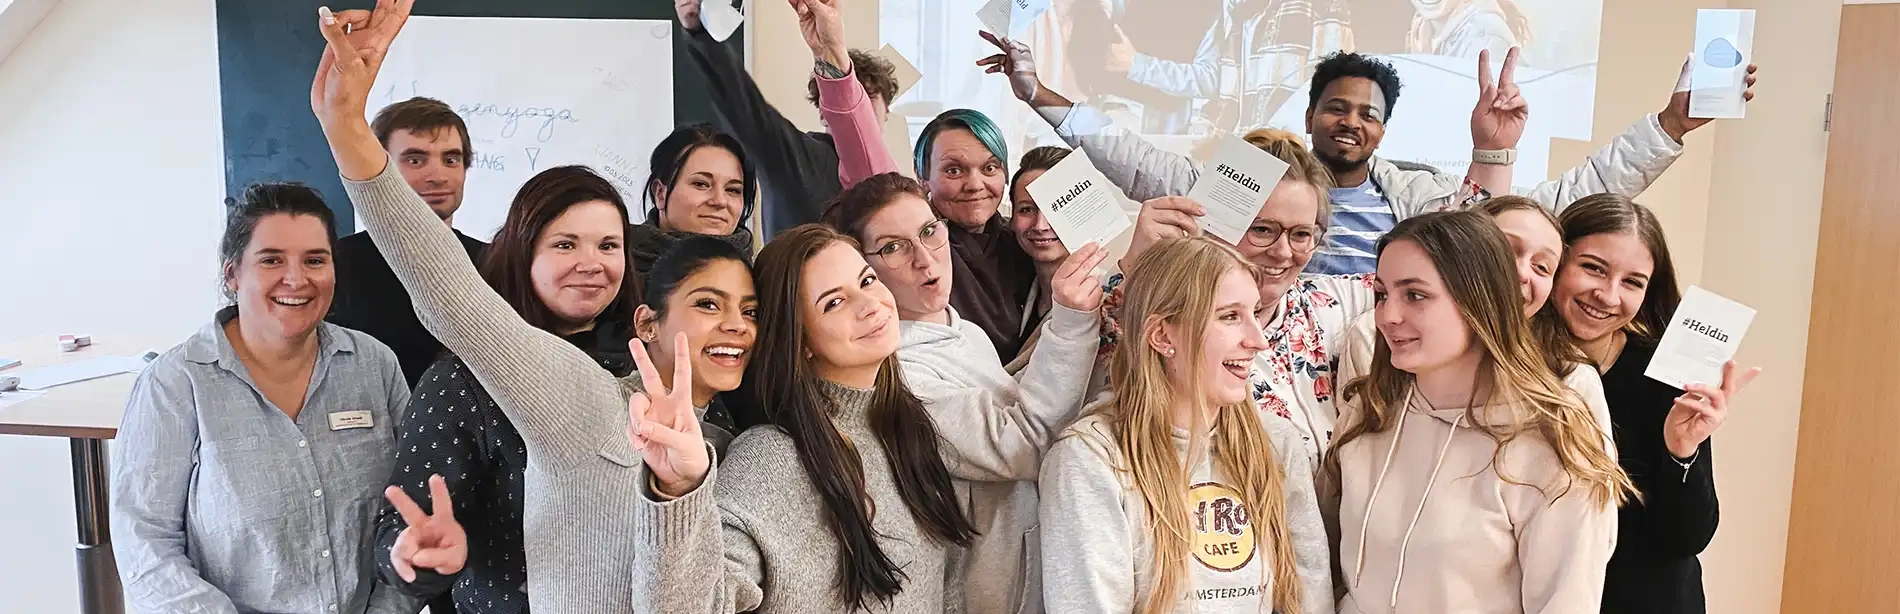 Klasse der Bavaria Klinik Kreischa feiern sich nach dem Schulworkshop